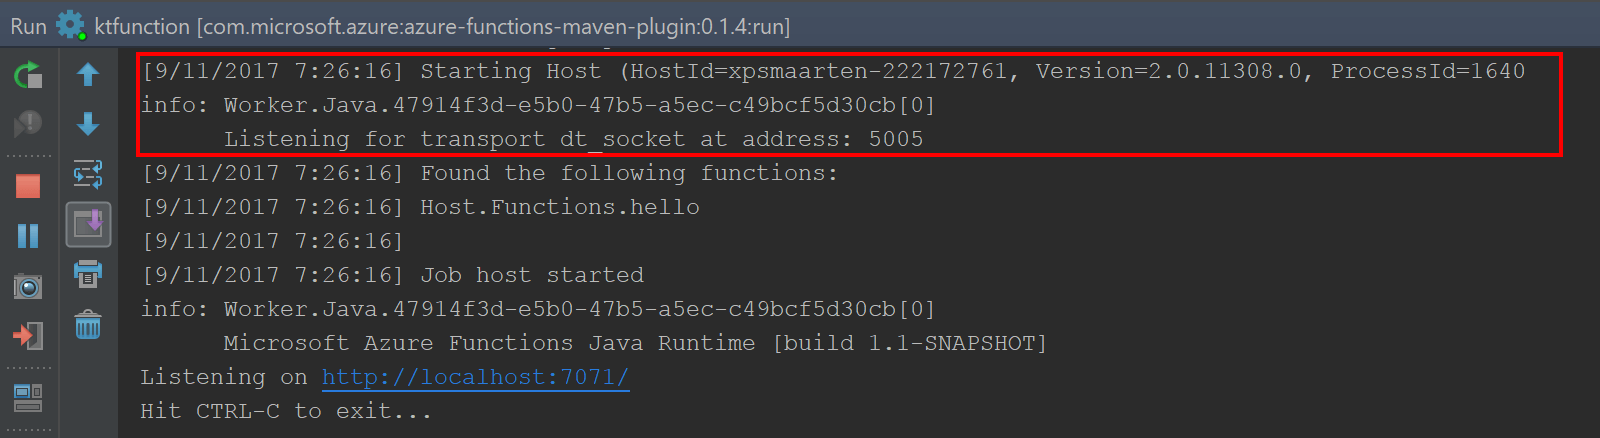 JVM running our Kotlin Azure Function exposes debugger port